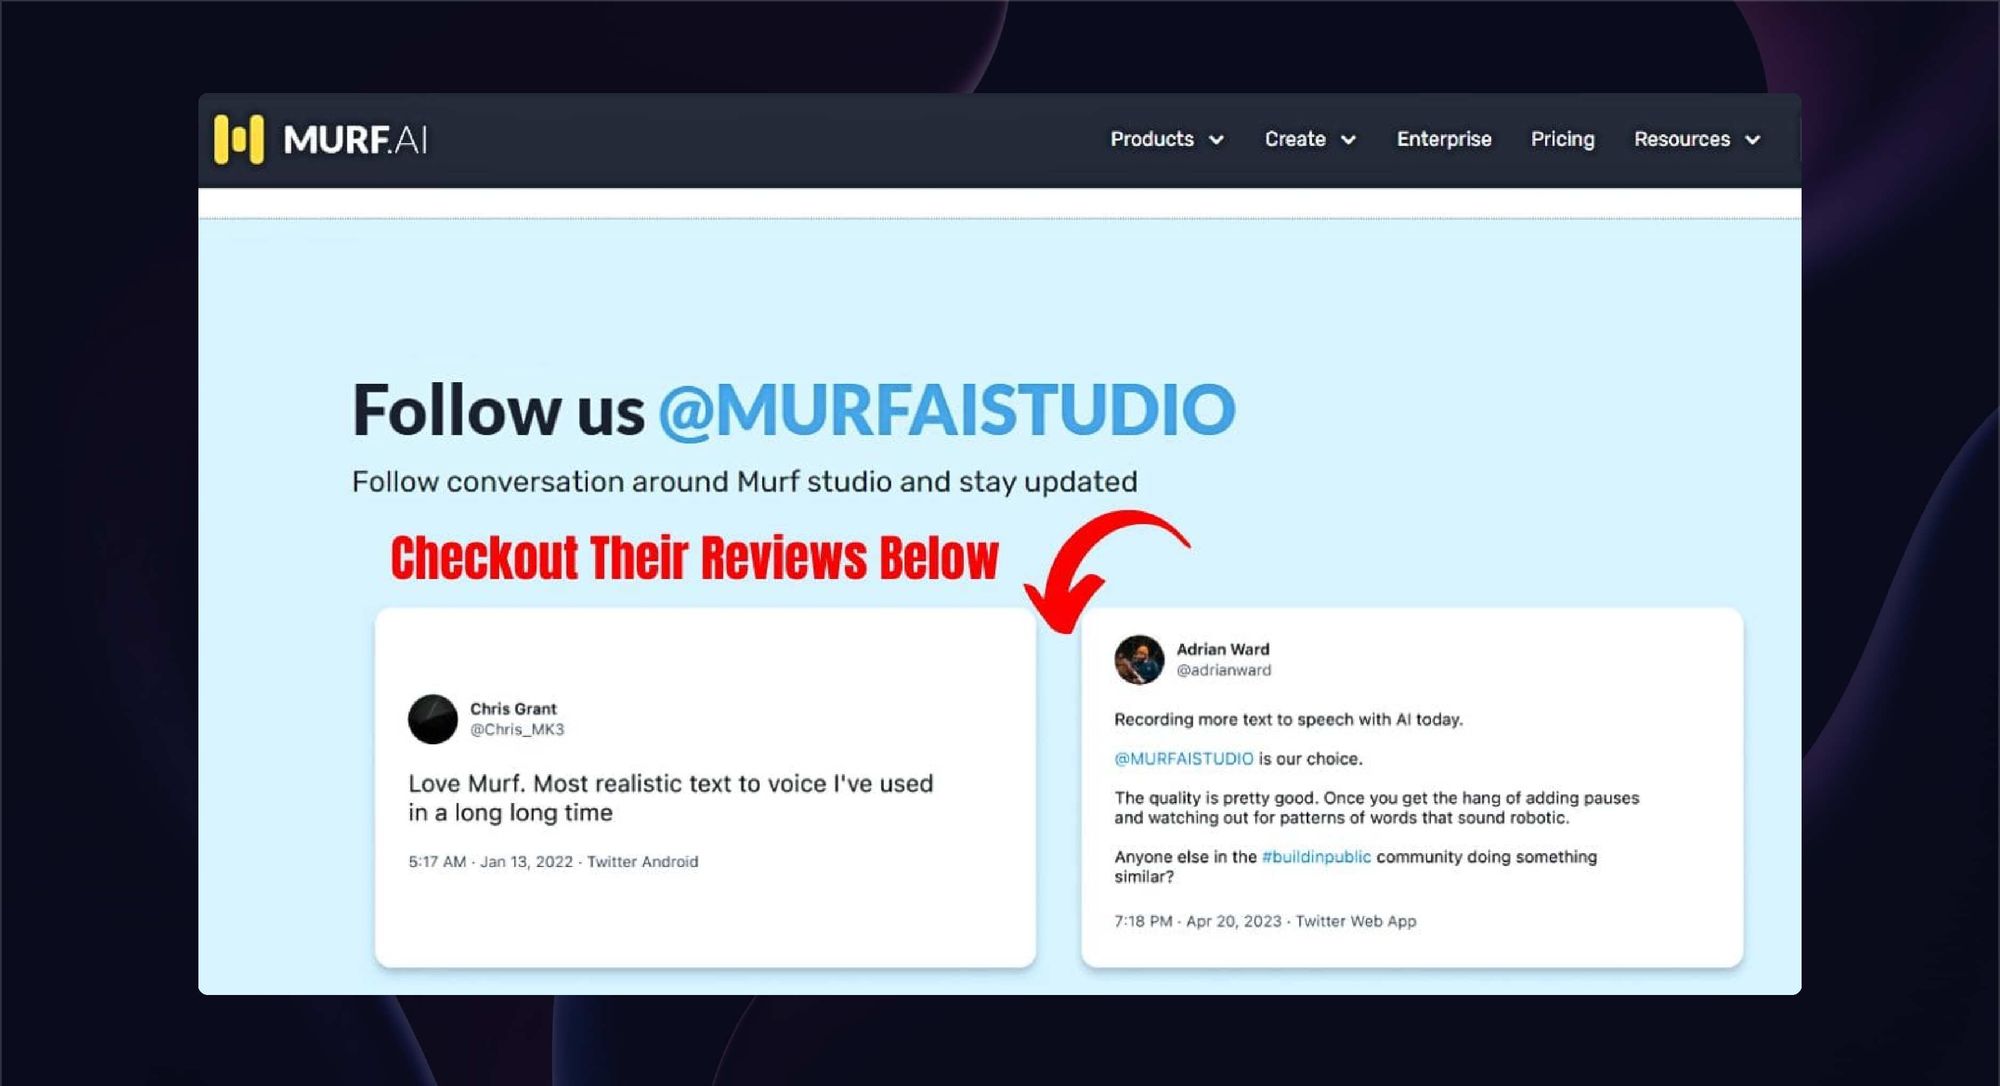 Follow Murf ai on social media